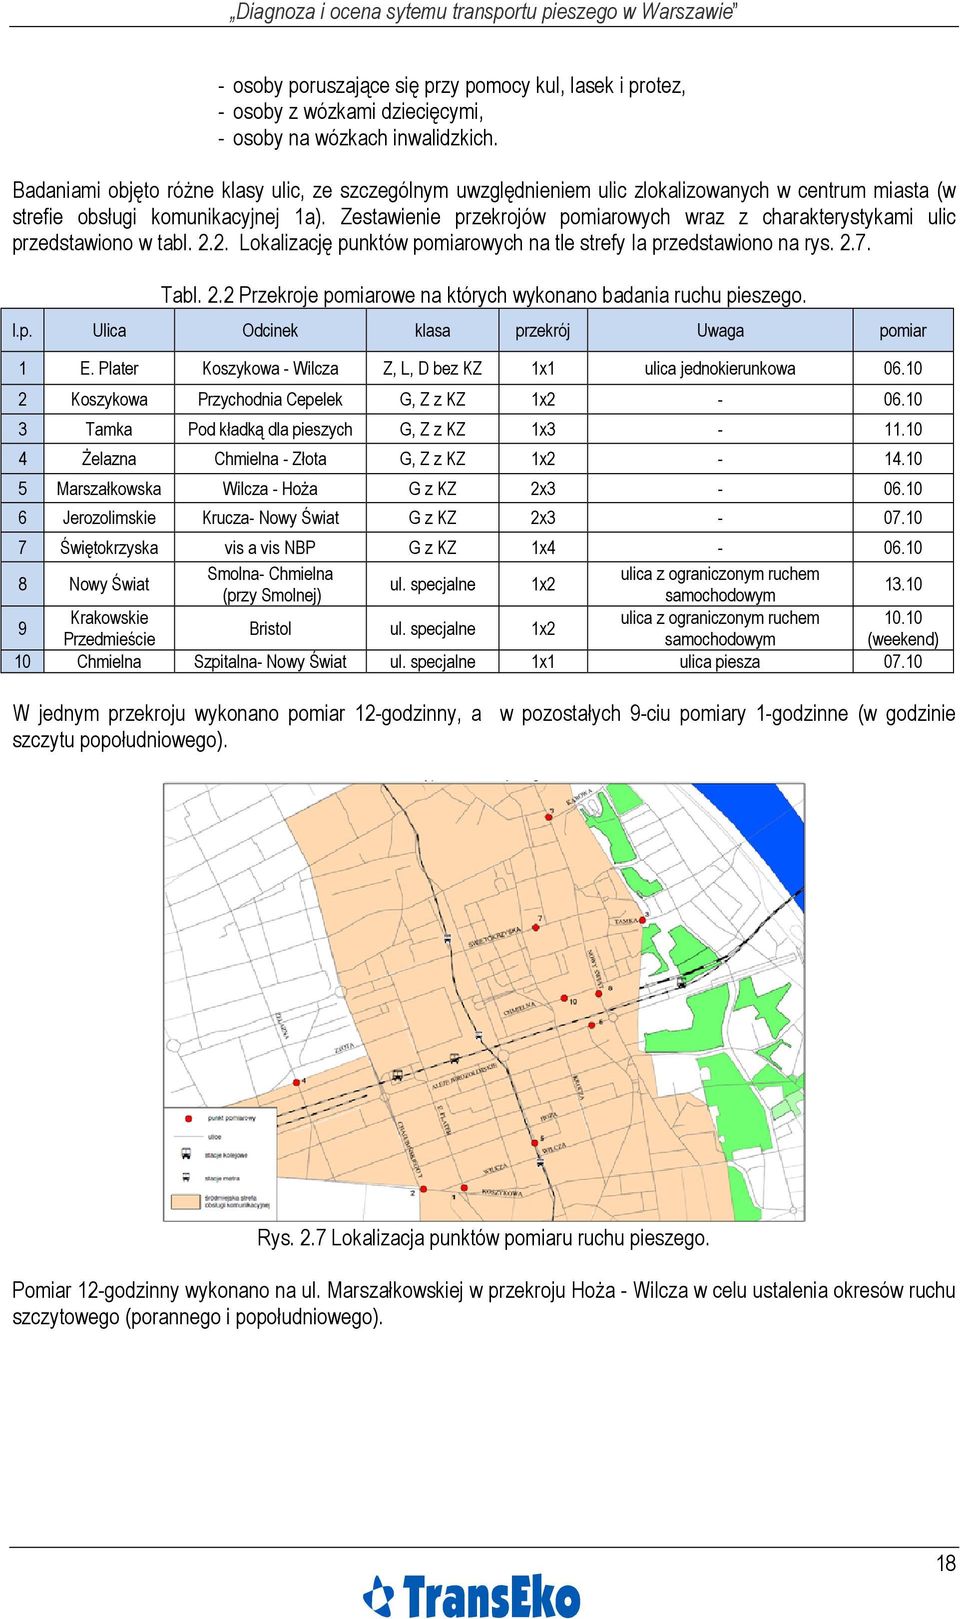 Zestawienie przekrojów pomiarowych wraz z charakterystykami ulic przedstawiono w tabl. 2.2. Lokalizację punktów pomiarowych na tle strefy Ia przedstawiono na rys. 2.7. Tabl. 2.2 Przekroje pomiarowe na których wykonano badania ruchu pieszego.